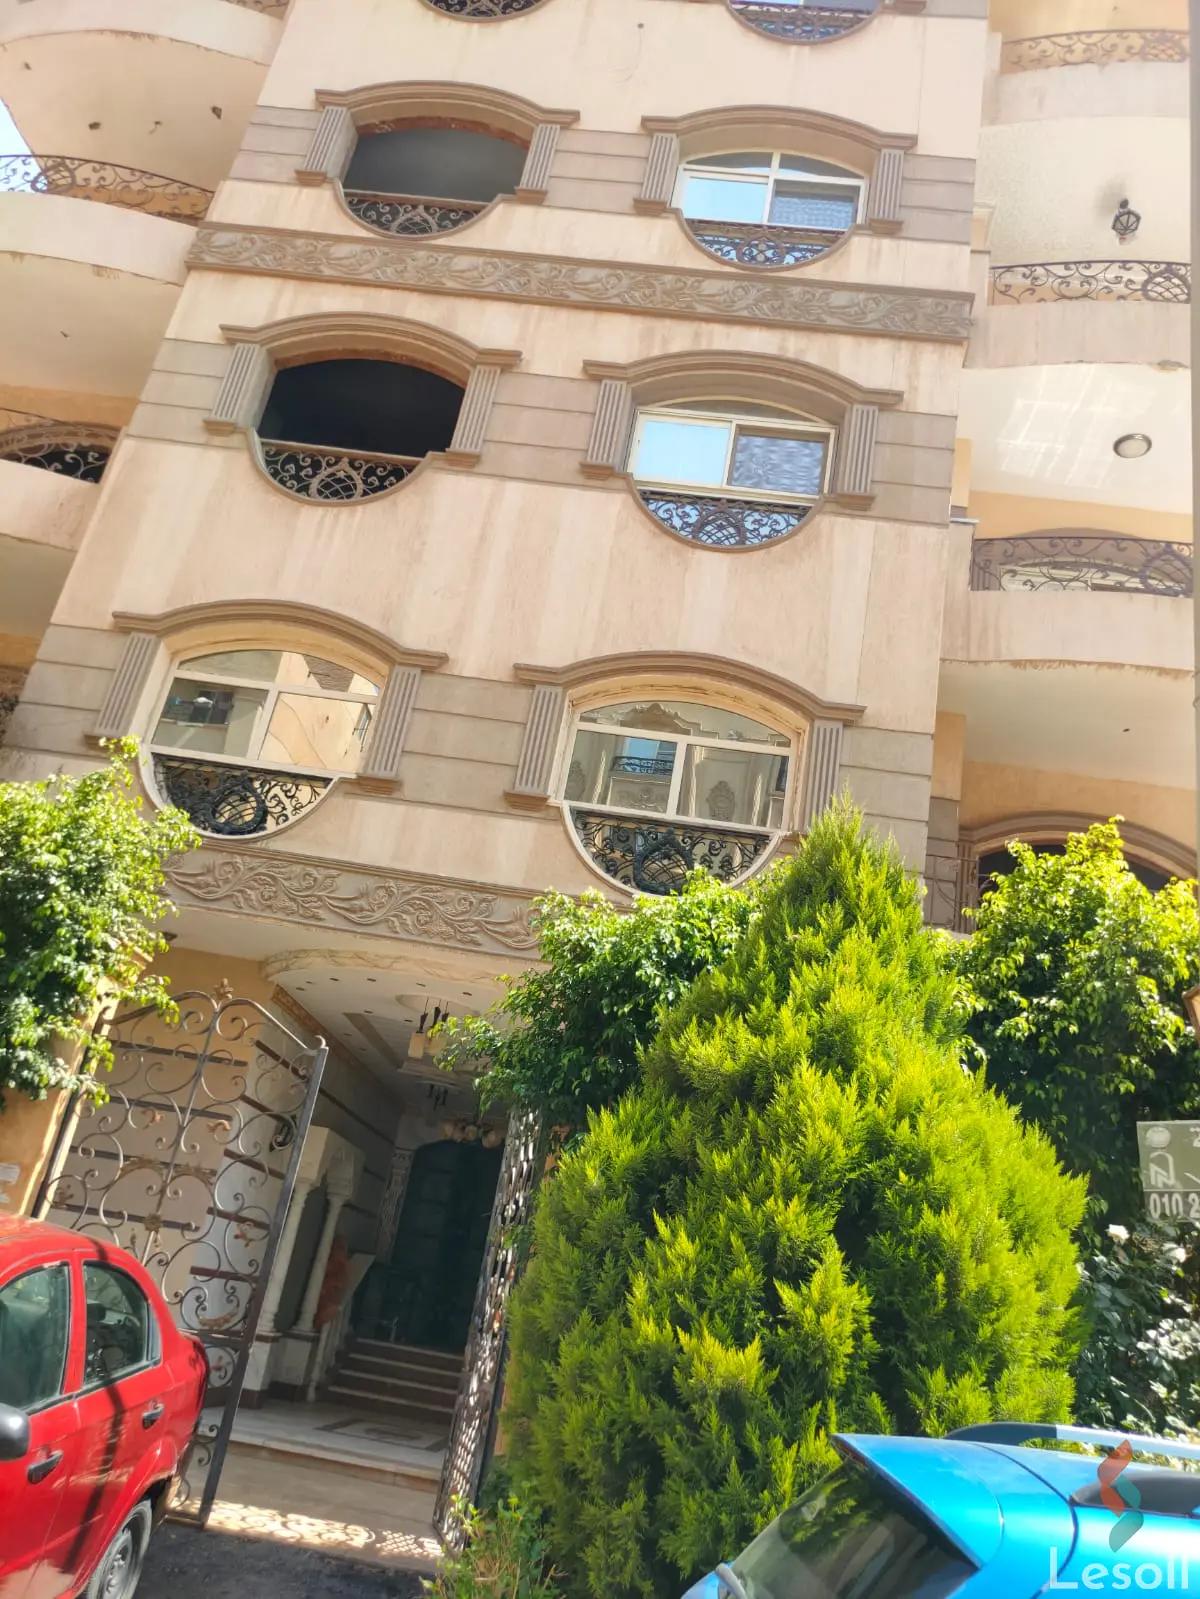  شقة ٢٢٠متر للايجار في البنفسج تشطيب سوبر لوكس في القاهرة 